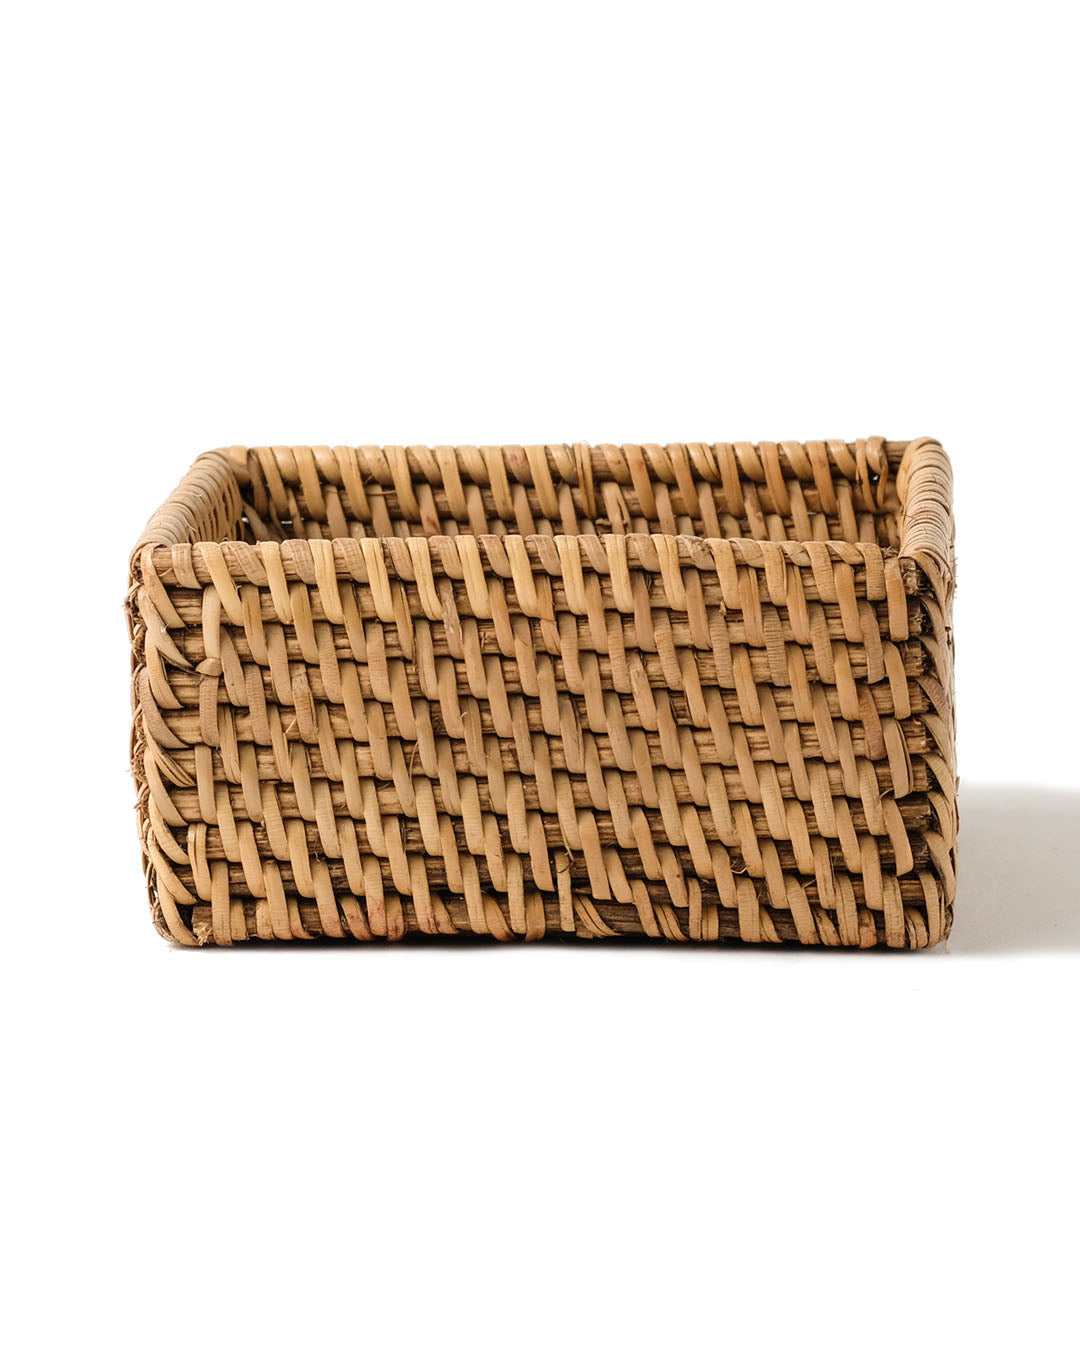 Caja de ratán 100% natural Samau decorativa, tejido a mano, acabado natural, cuadrado,  11 cm de largo x 11 cm de ancho, fabricado en Indonesia